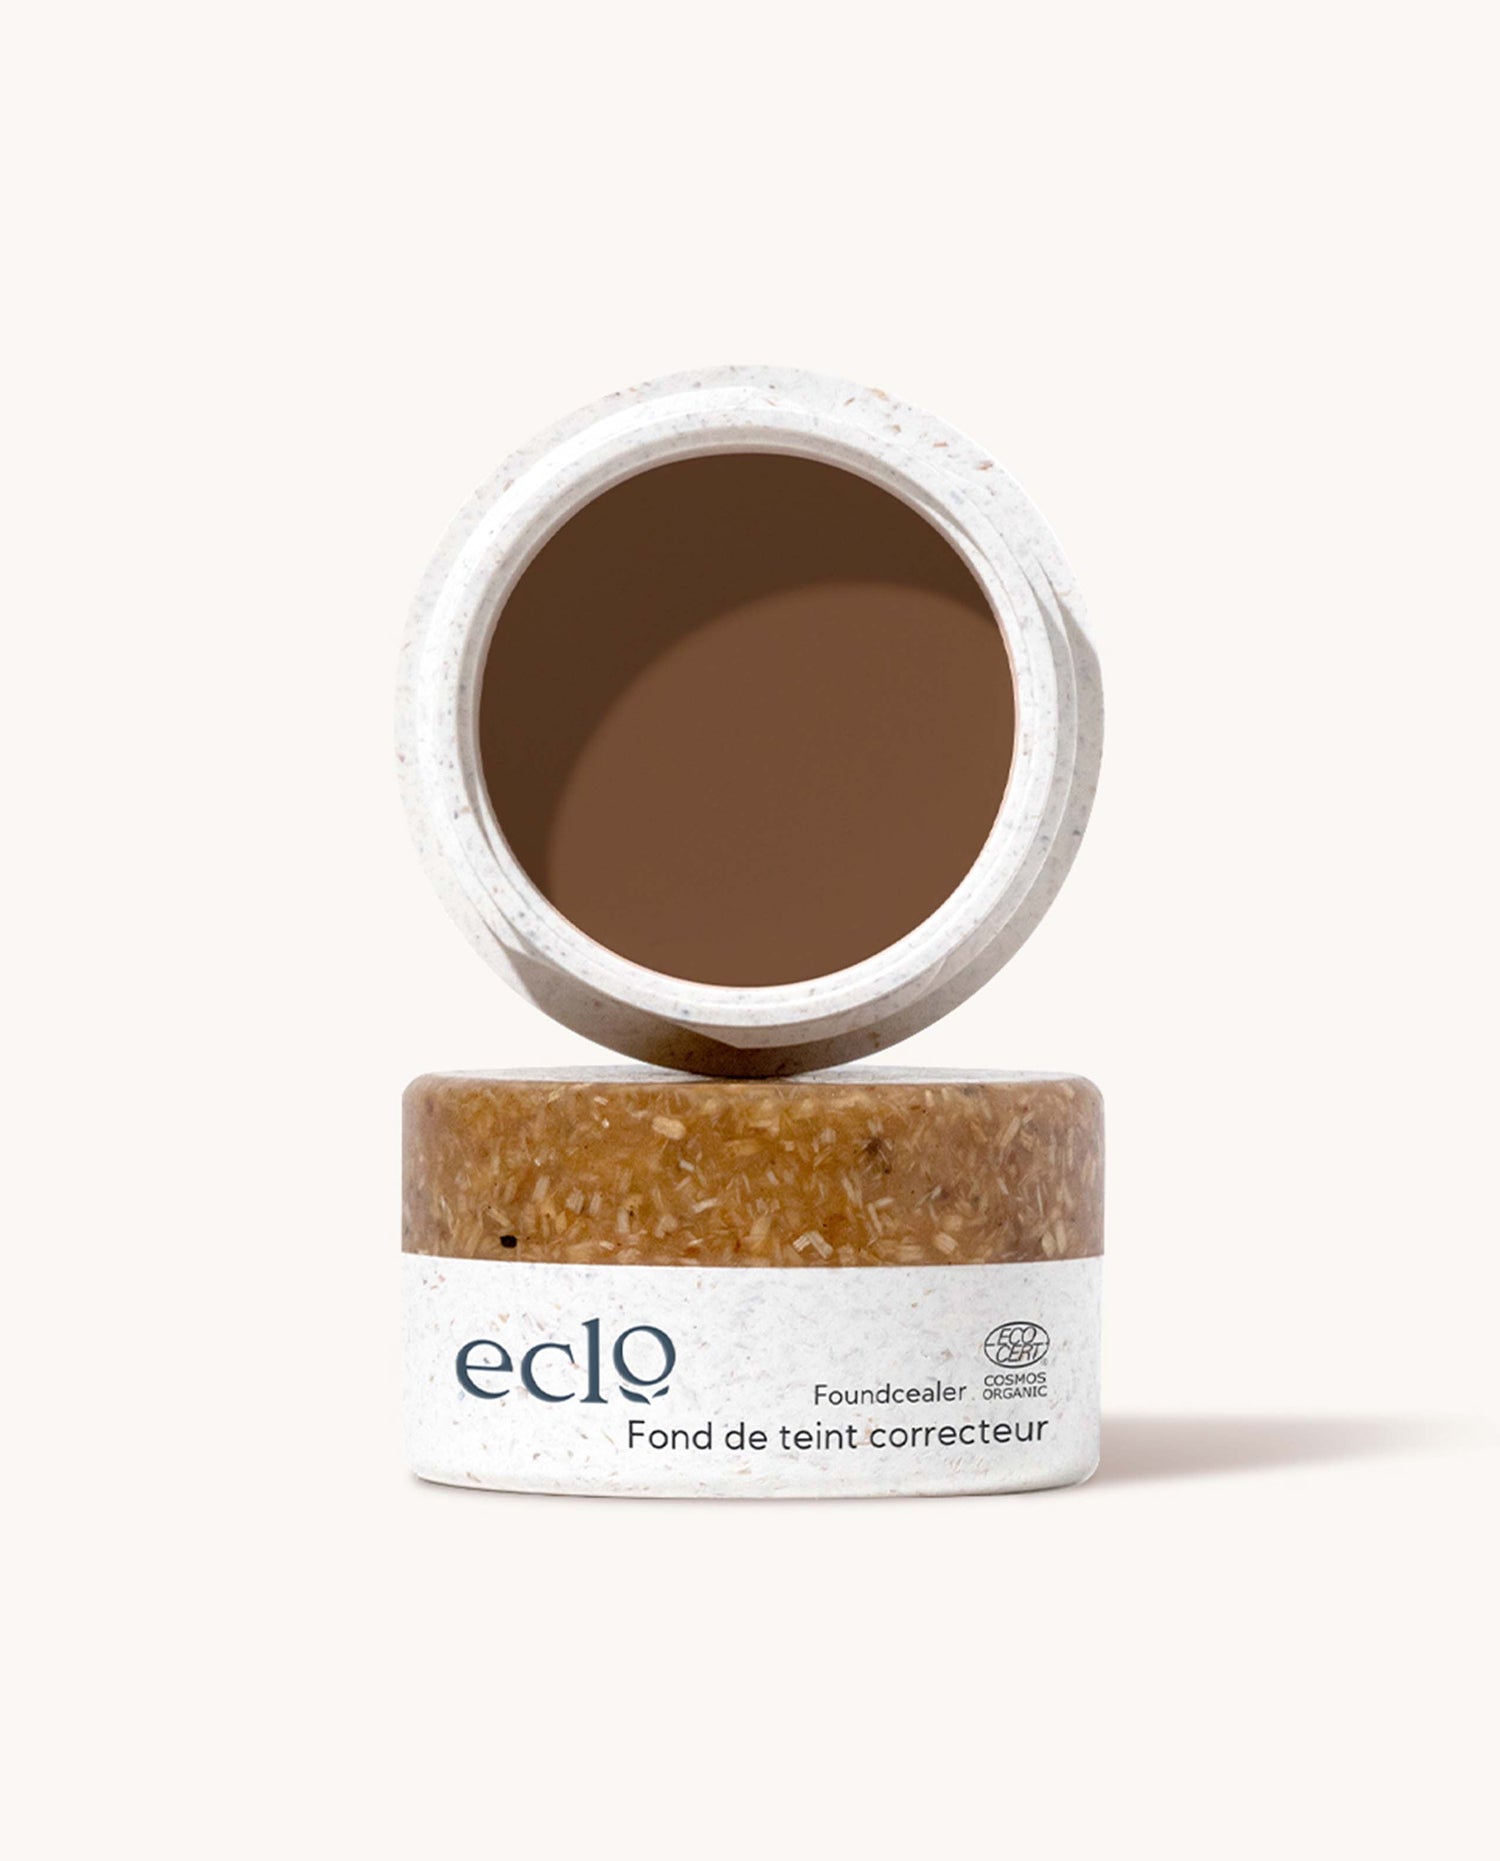 marché commun eclo beauté maquillage fond de teint correcteur naturel biologique Made in France zéro-déchet chocolat